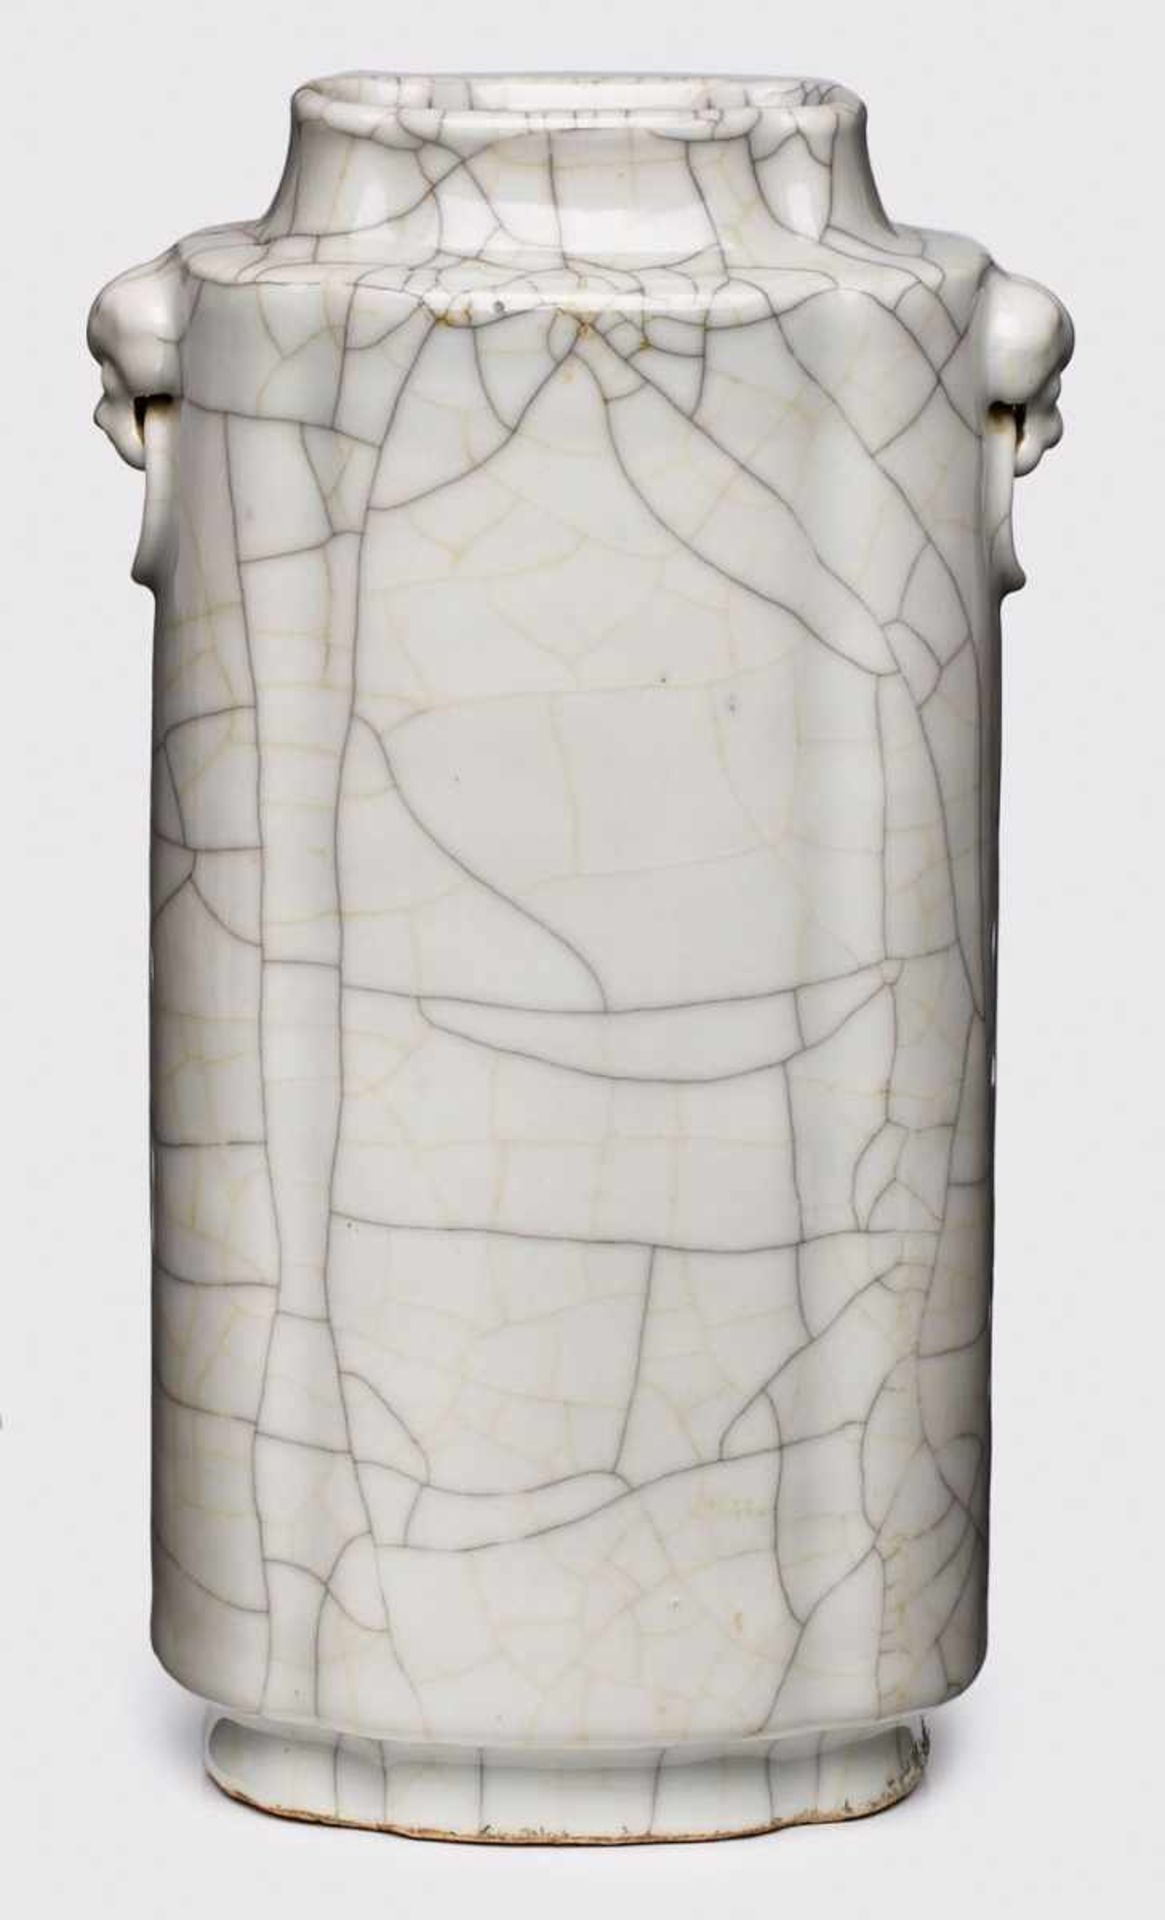 Große Vase, China wohl um 1900. Porzellan, weiss glasiert. Schlanke Röhrenform auf ovalem